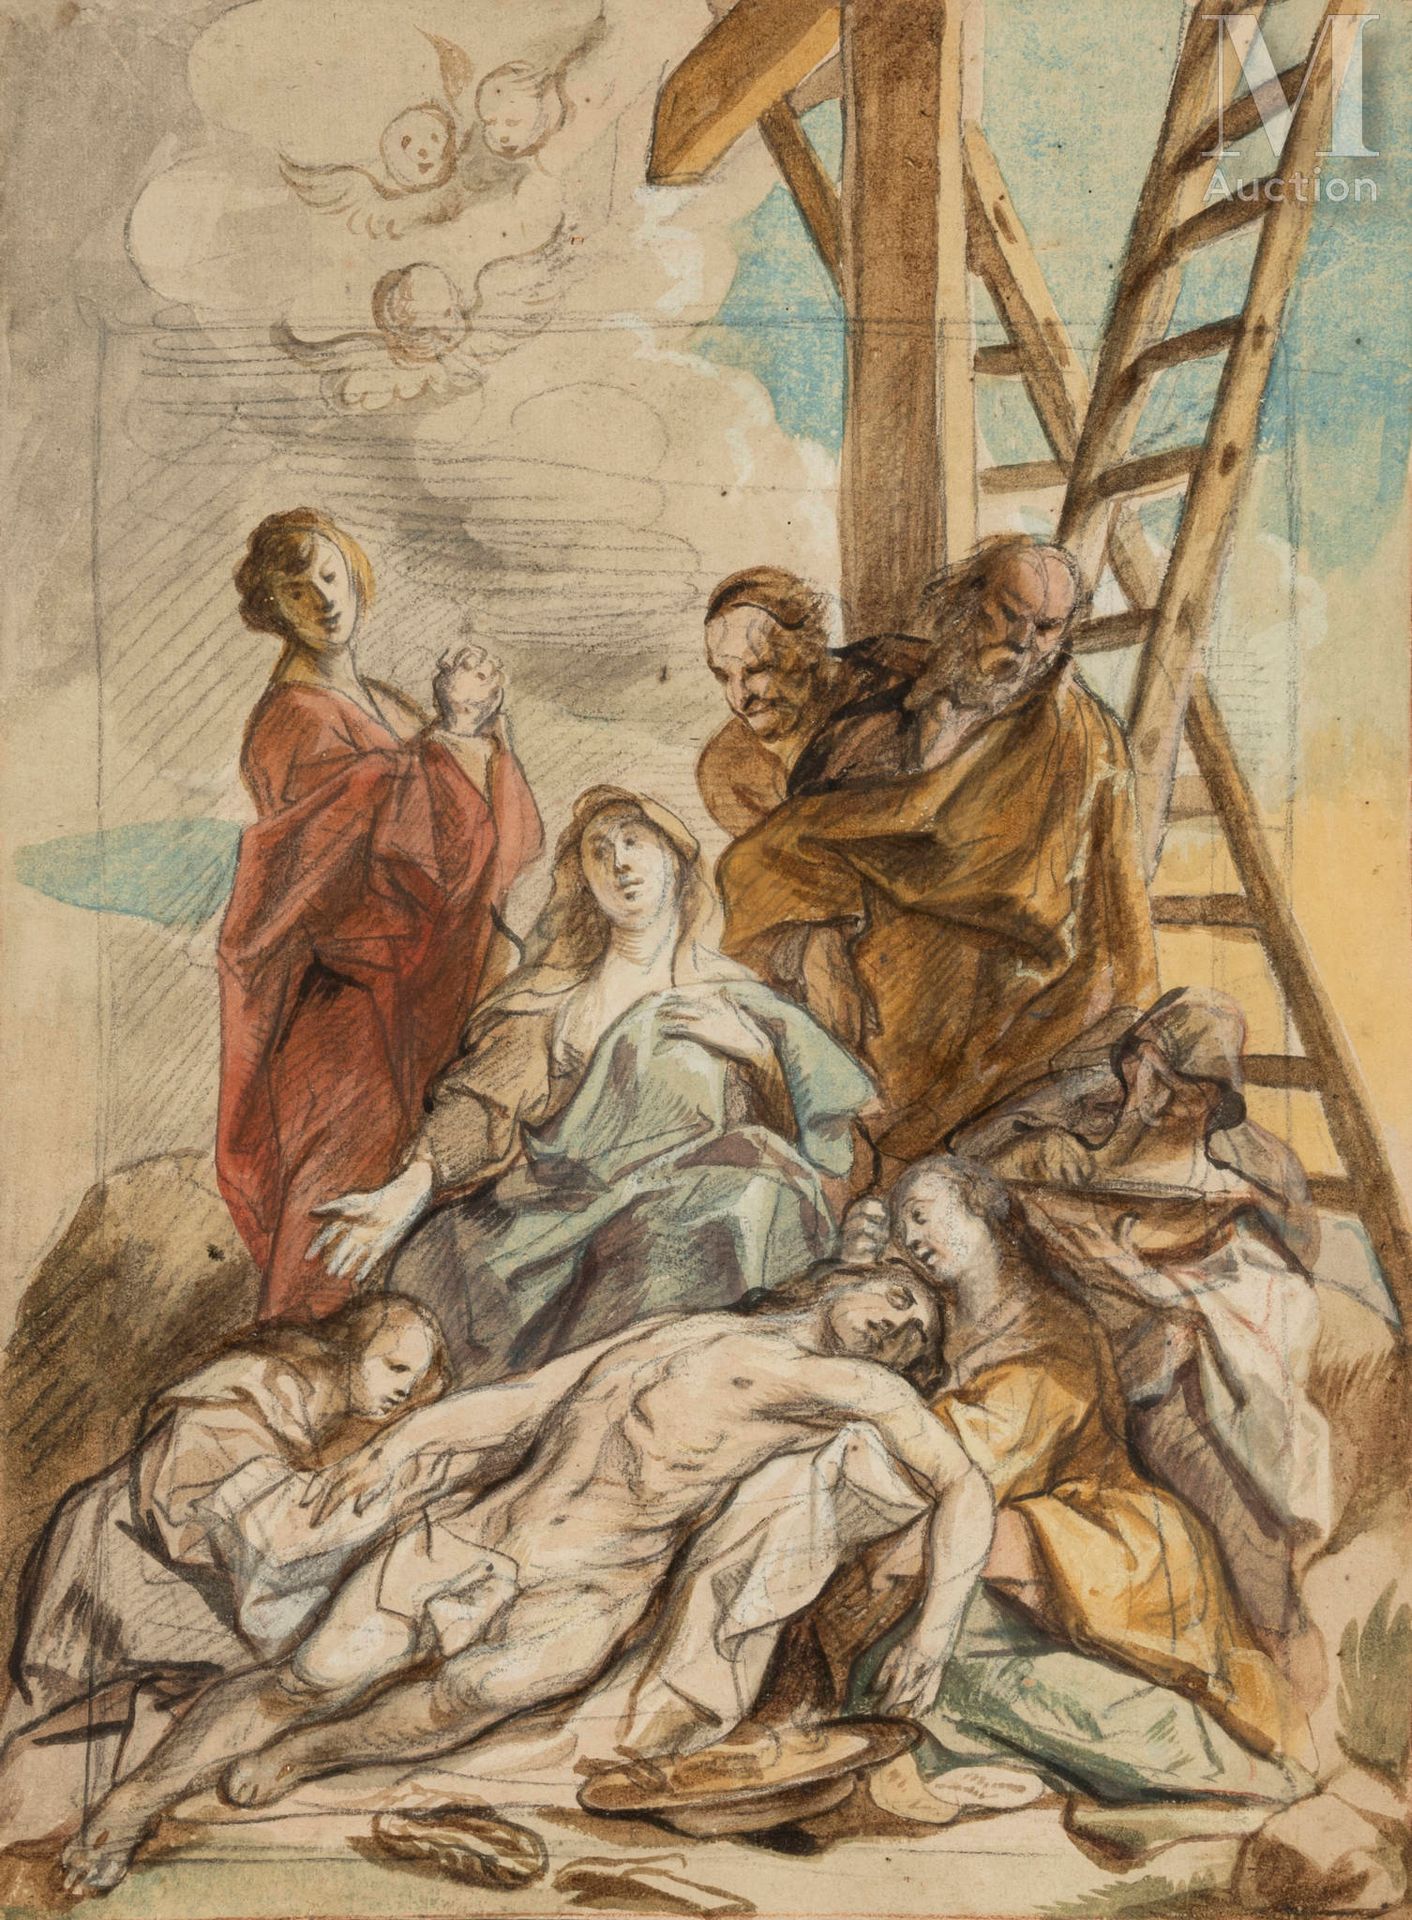 Jacob JORDAENS (1593 – 1678) 基督从十字架上下来，约1650年



黑色铅笔、红色粉笔和水彩水粉的亮点

用红色粉笔画出的外框线和&hellip;